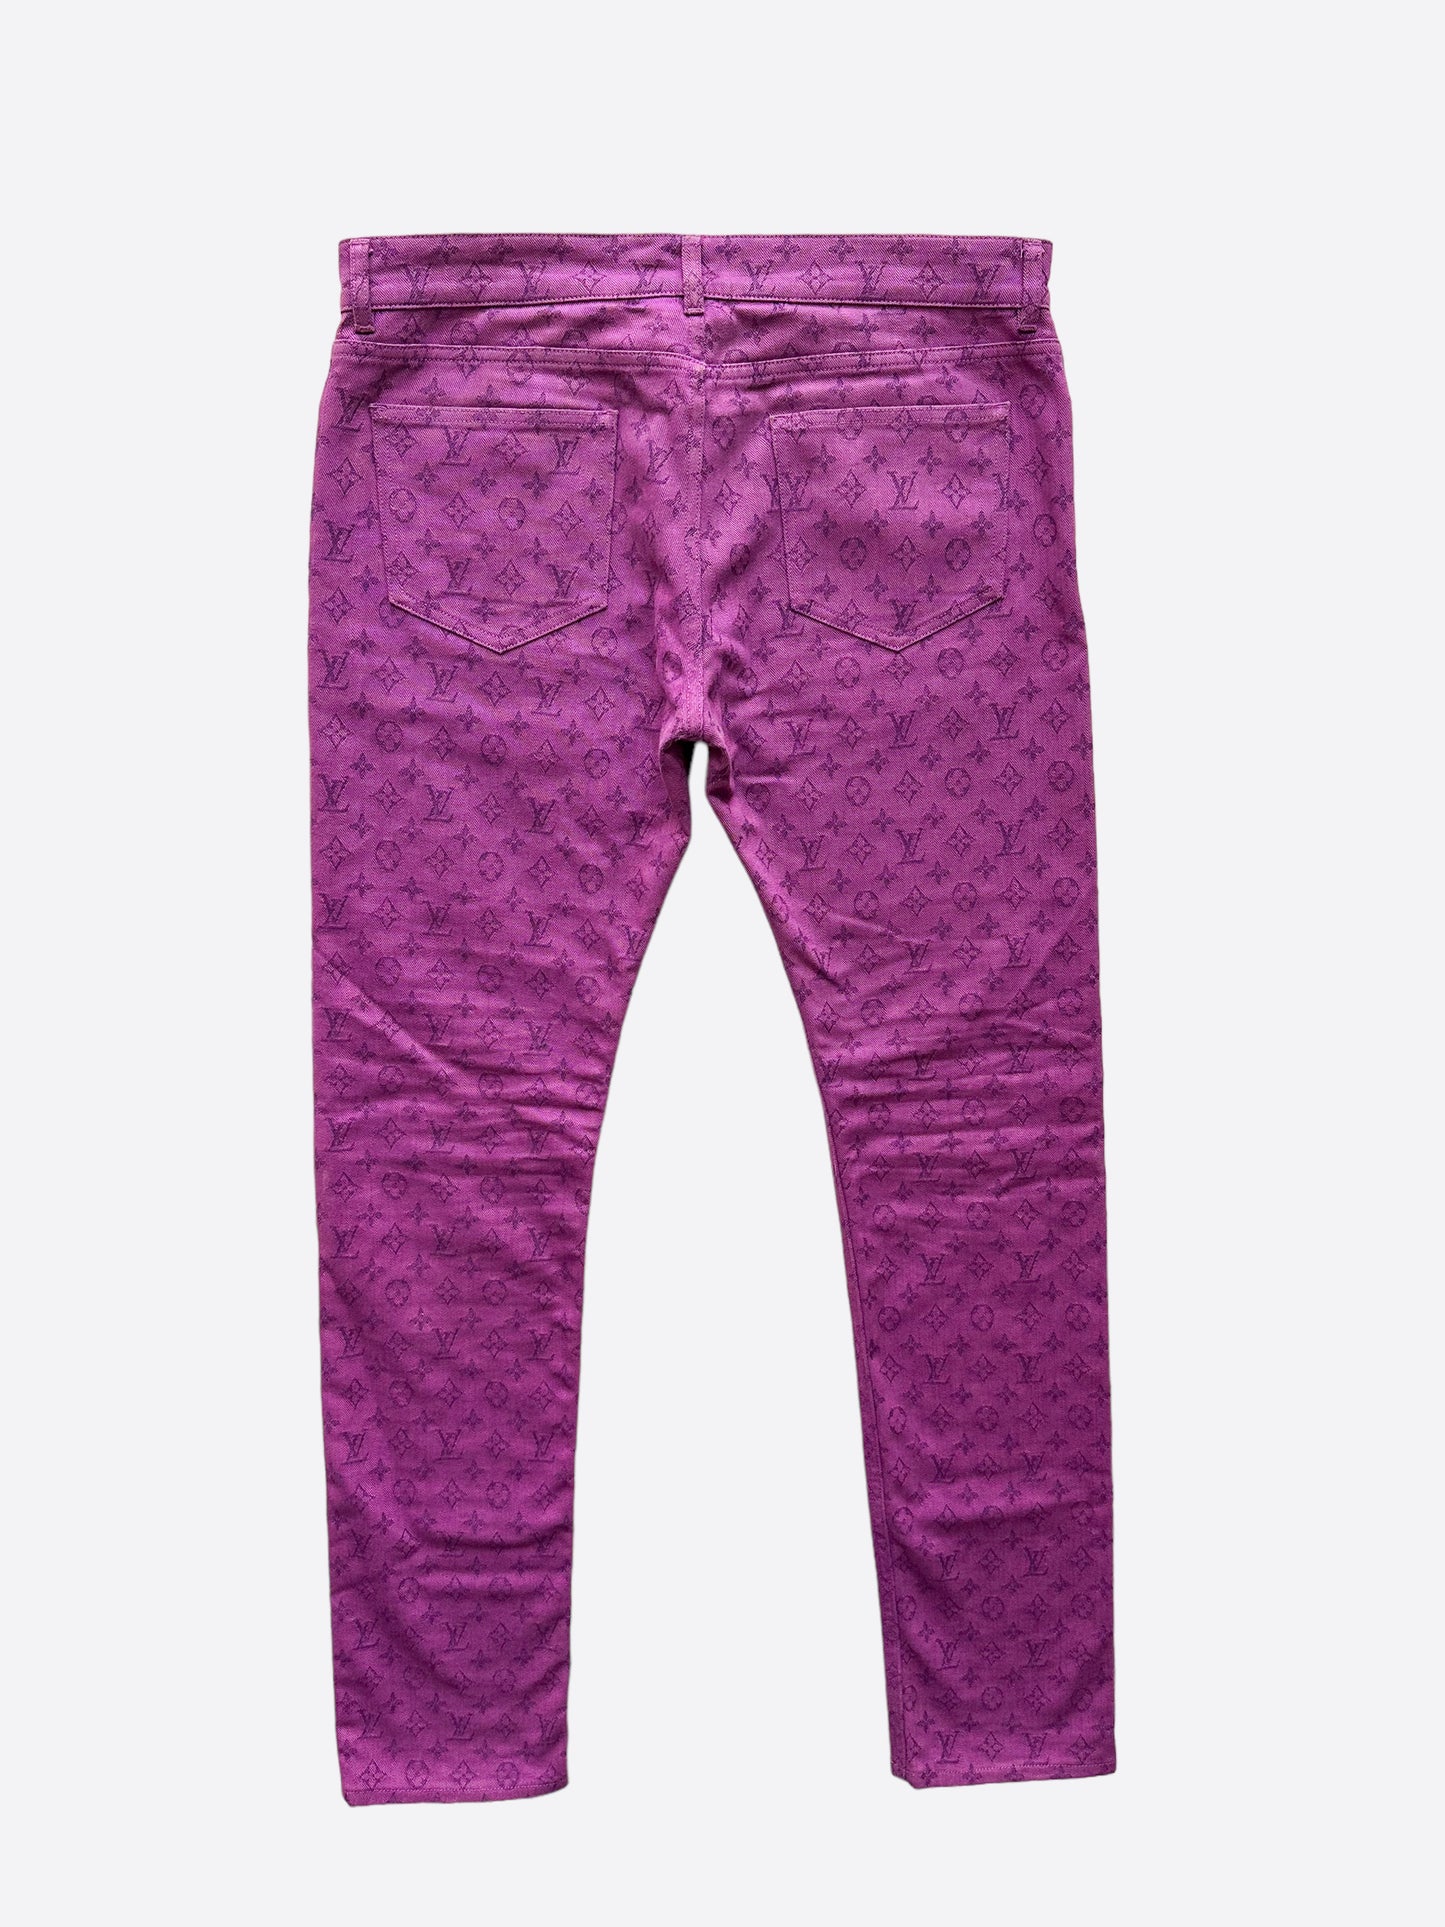 Louis Vuitton Women's Pants for sale